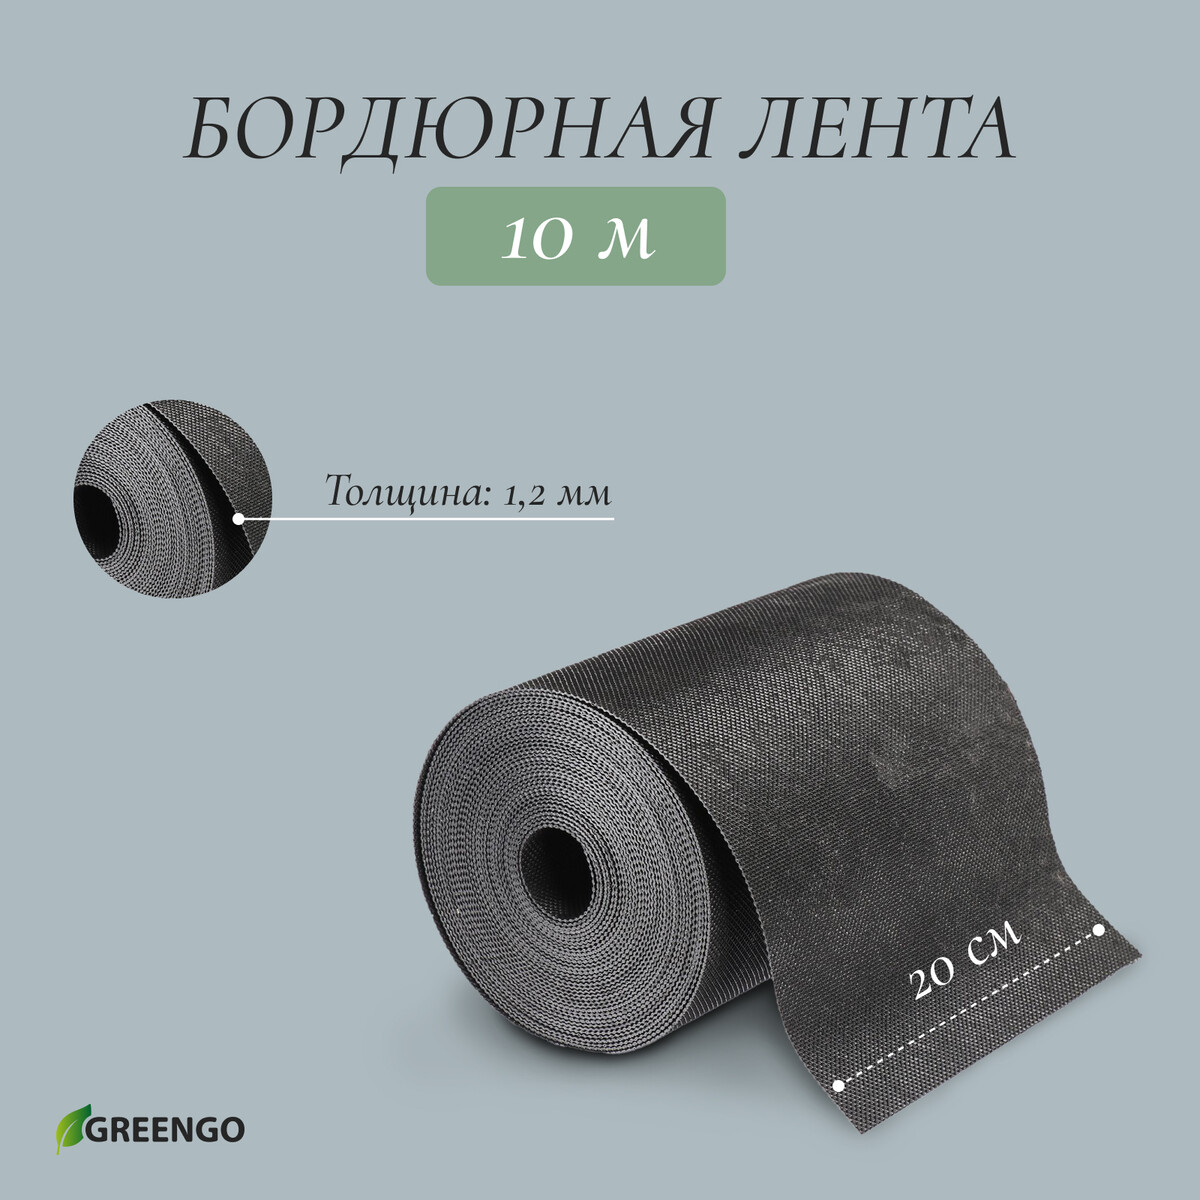 Лента бордюрная, 0.2 × 10 м, толщина 1.2 мм, пластиковая, черная, greengo лента бордюрная 0 1 × 9 м толщина 0 6 мм пластиковая гофра черная